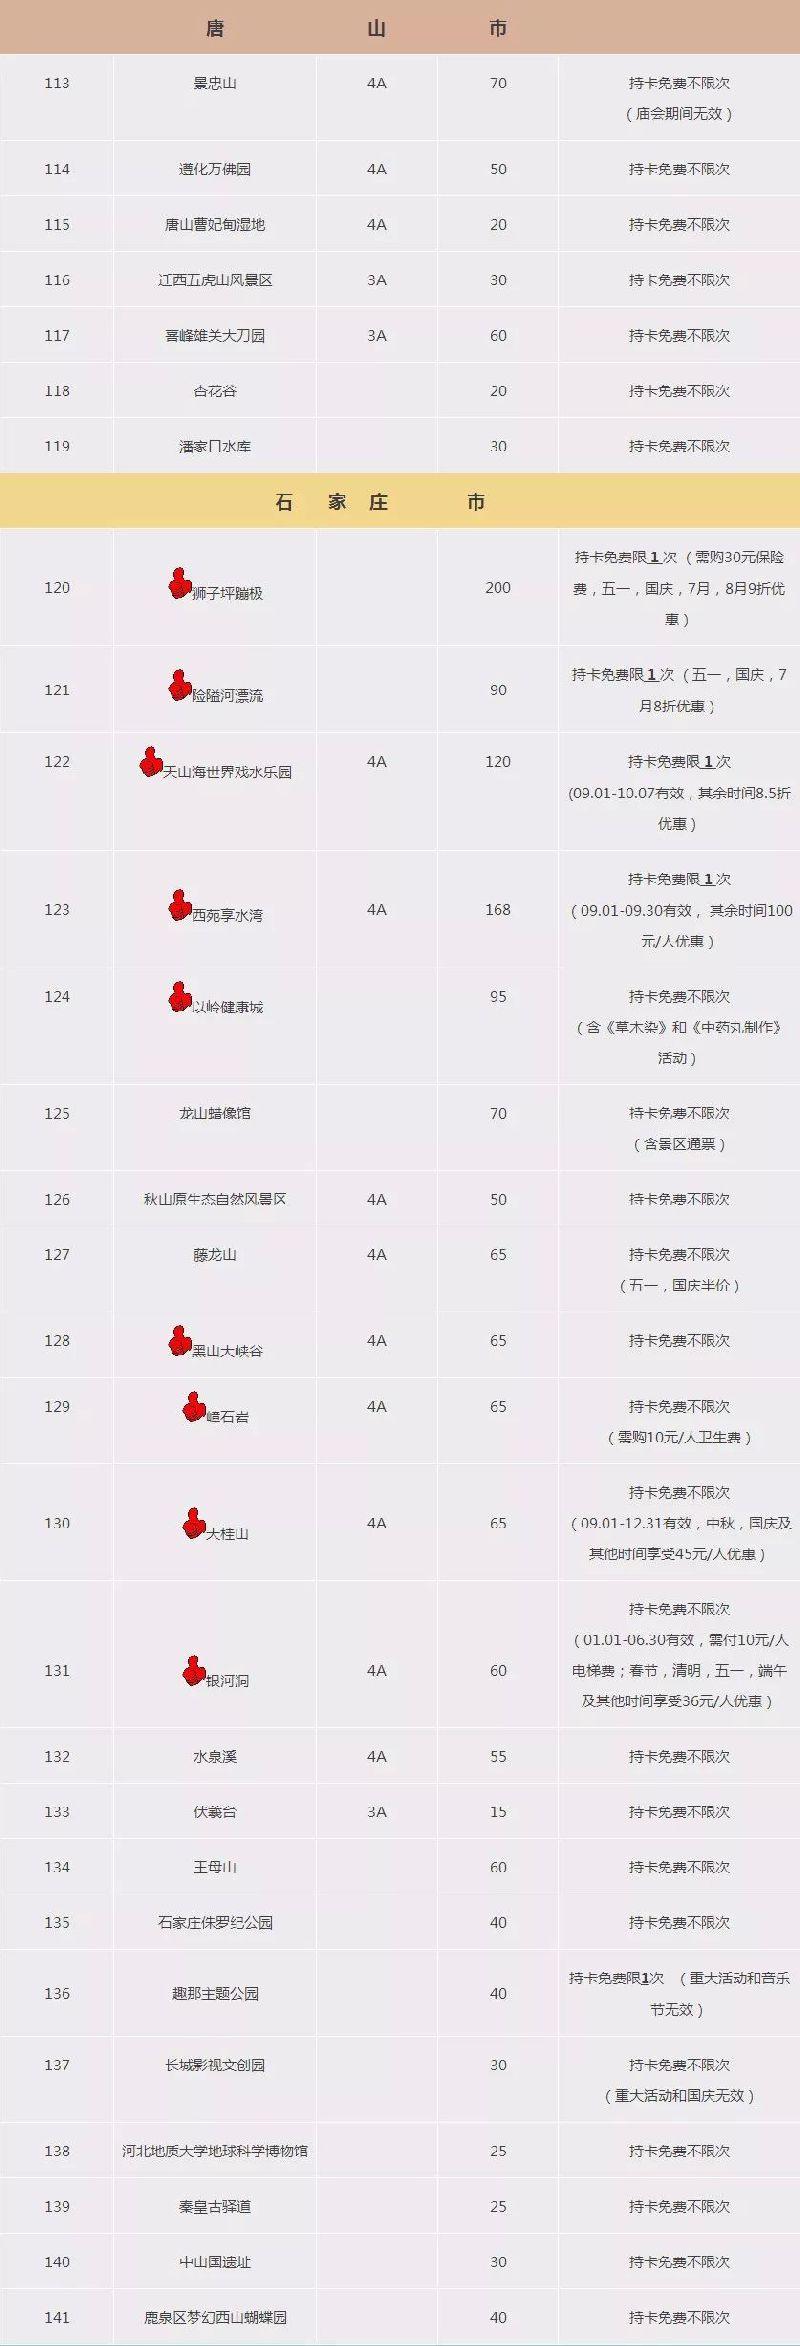 2018-2019北京公园年票包括哪些景区